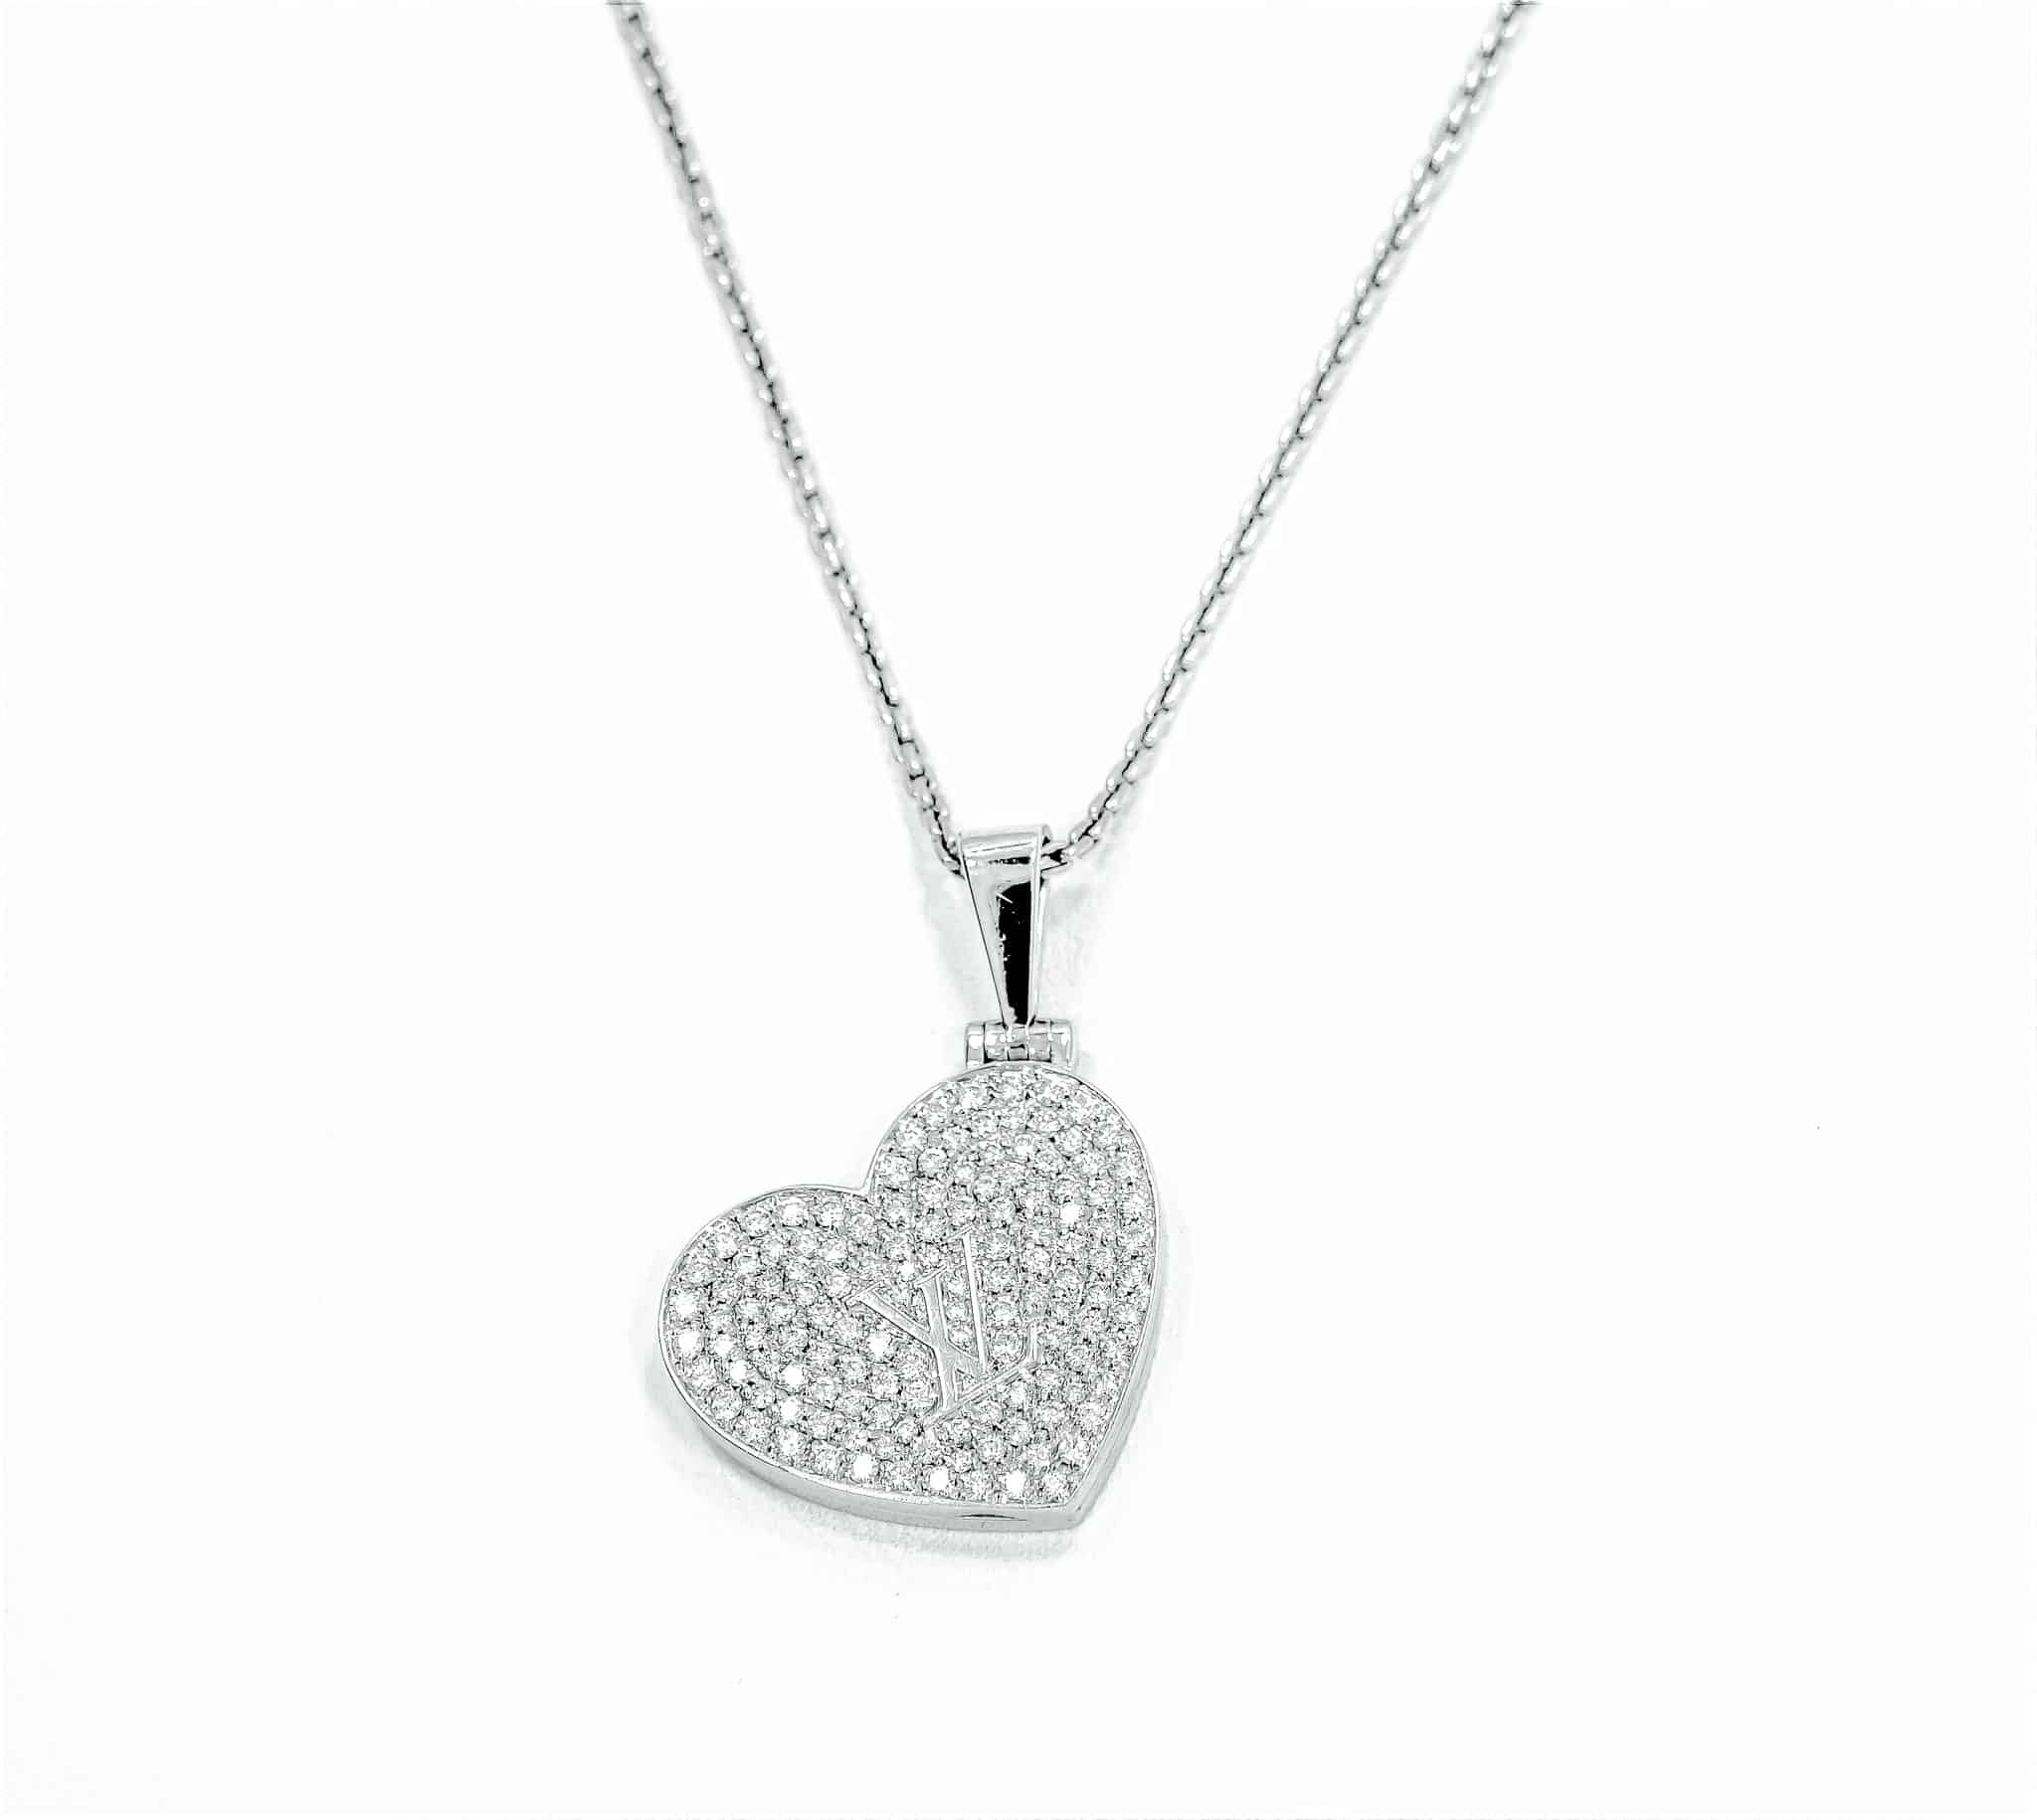 Lv heart locket necklace